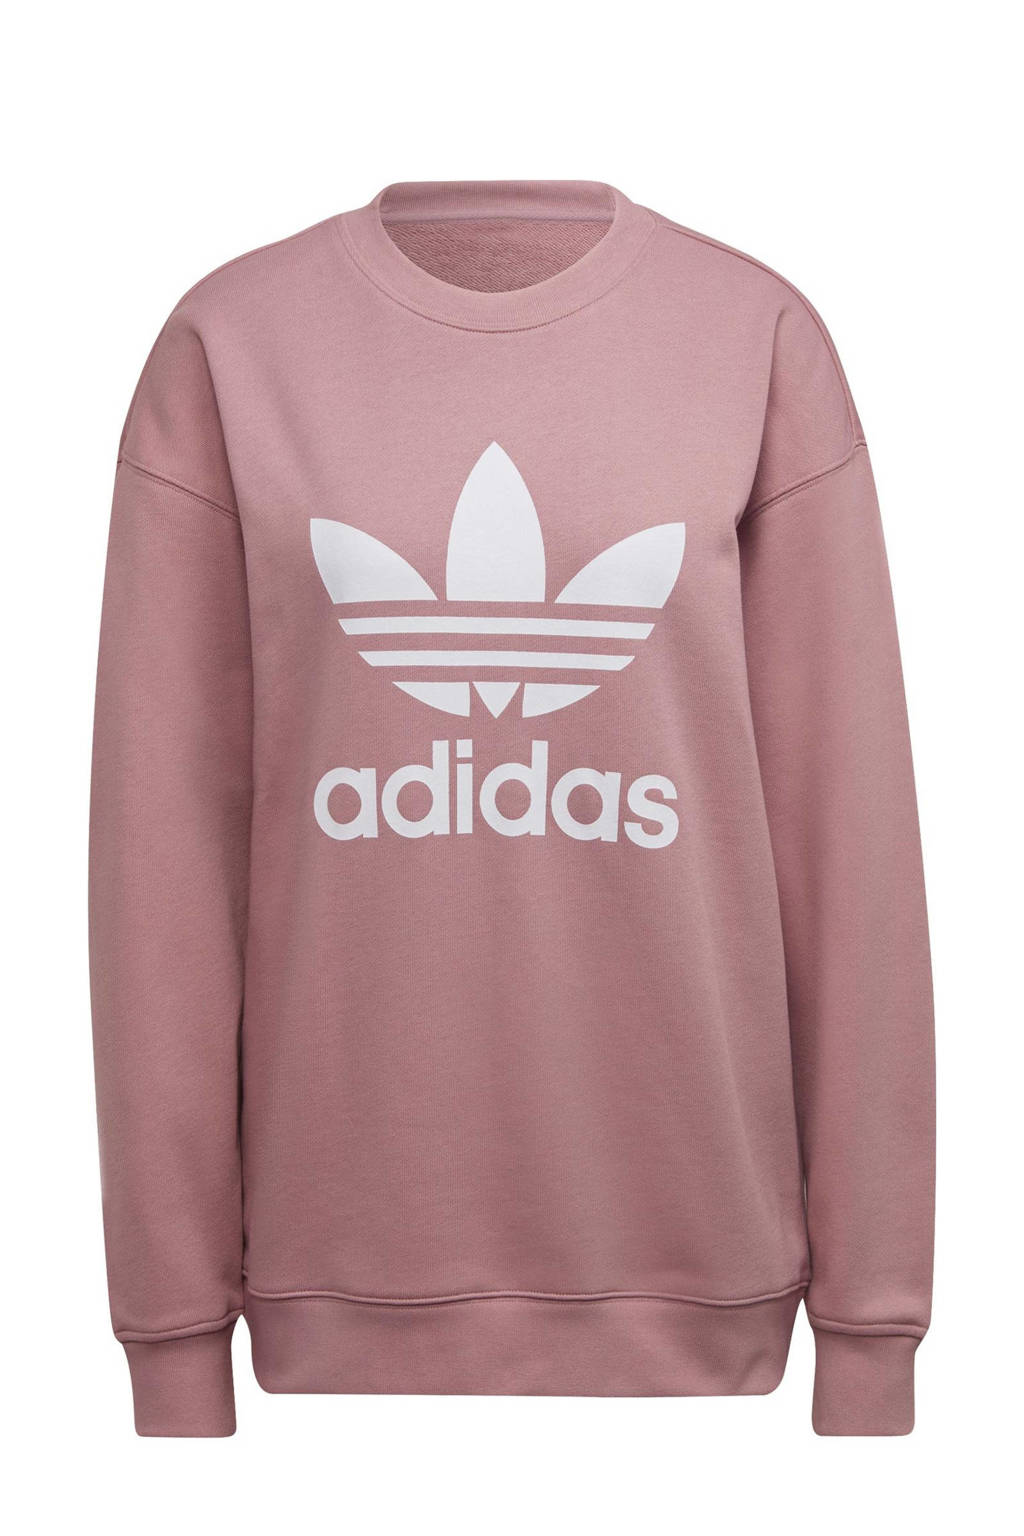 Roze dames adidas Originals sweater van katoen met logo dessin, lange mouwen en ronde hals